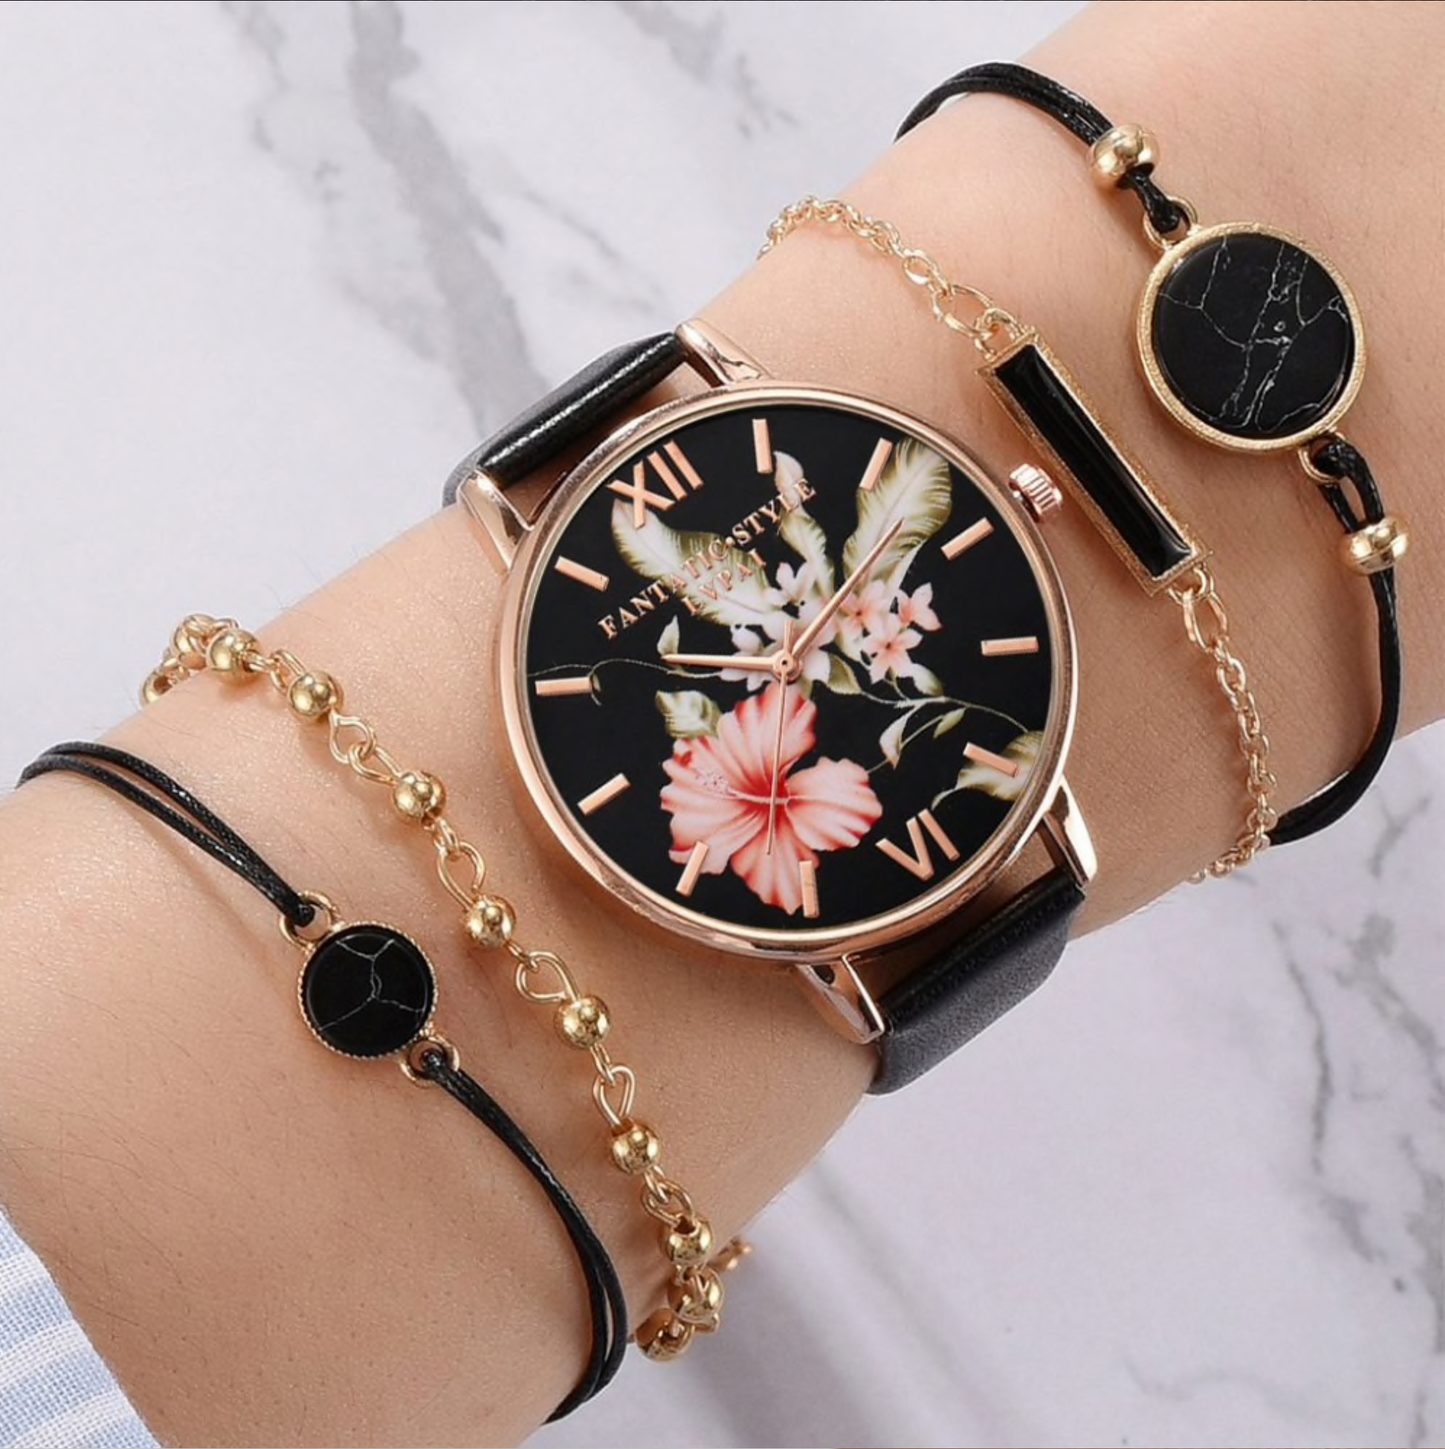 Black Floral Goldtone Watch And Bracelet Set